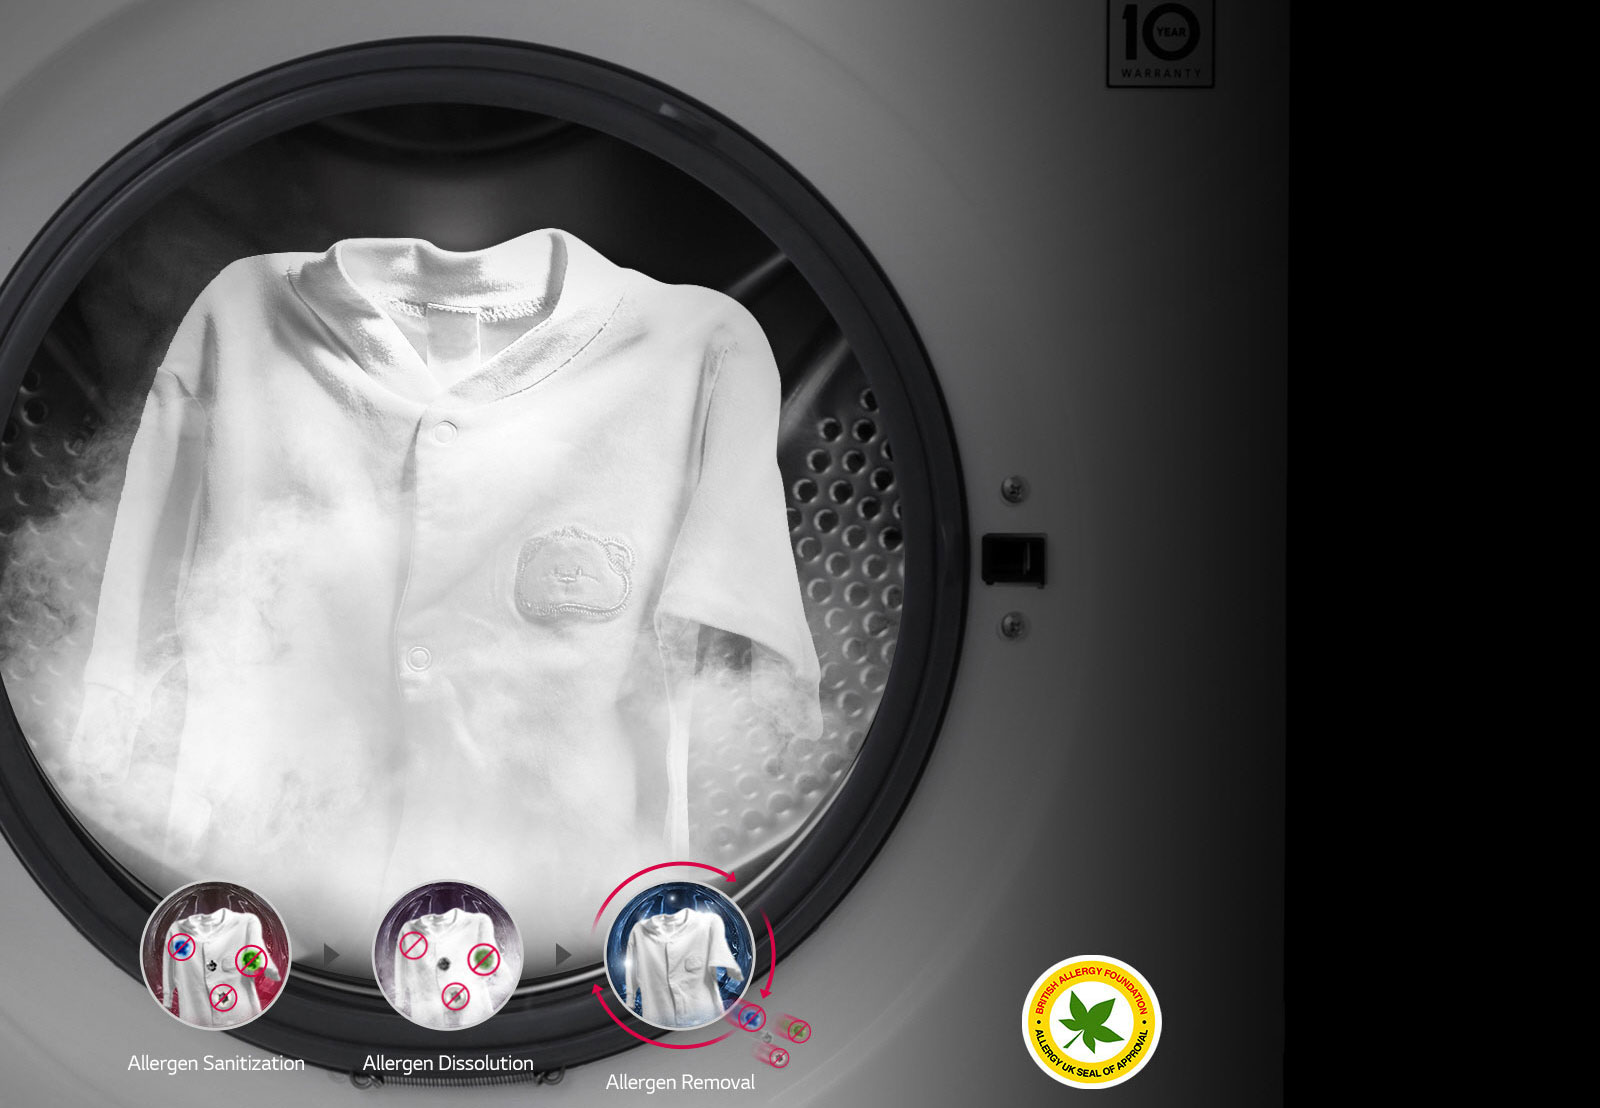 99.9% ALLERGENES REDUCED with Steam1 | LG 9kg washing machine with Steam